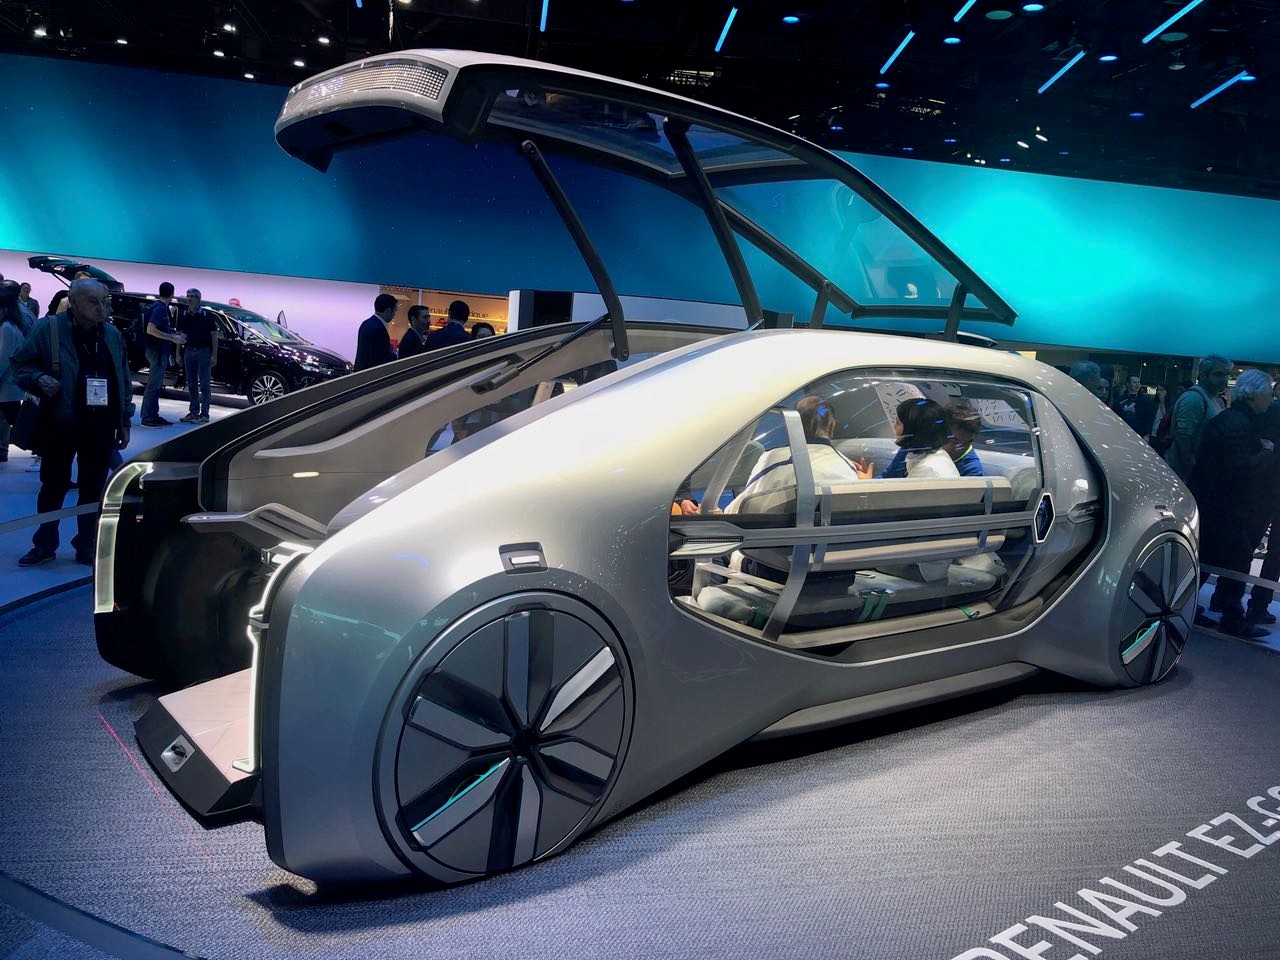 Đây còn là sân khấu để các hãng xe viết nên câu chuyện tương lai khi giới thiệu mẫu xe theo xu hướng futuristic - các mẫu xe tự hành, sử dụng công nghệ AI.